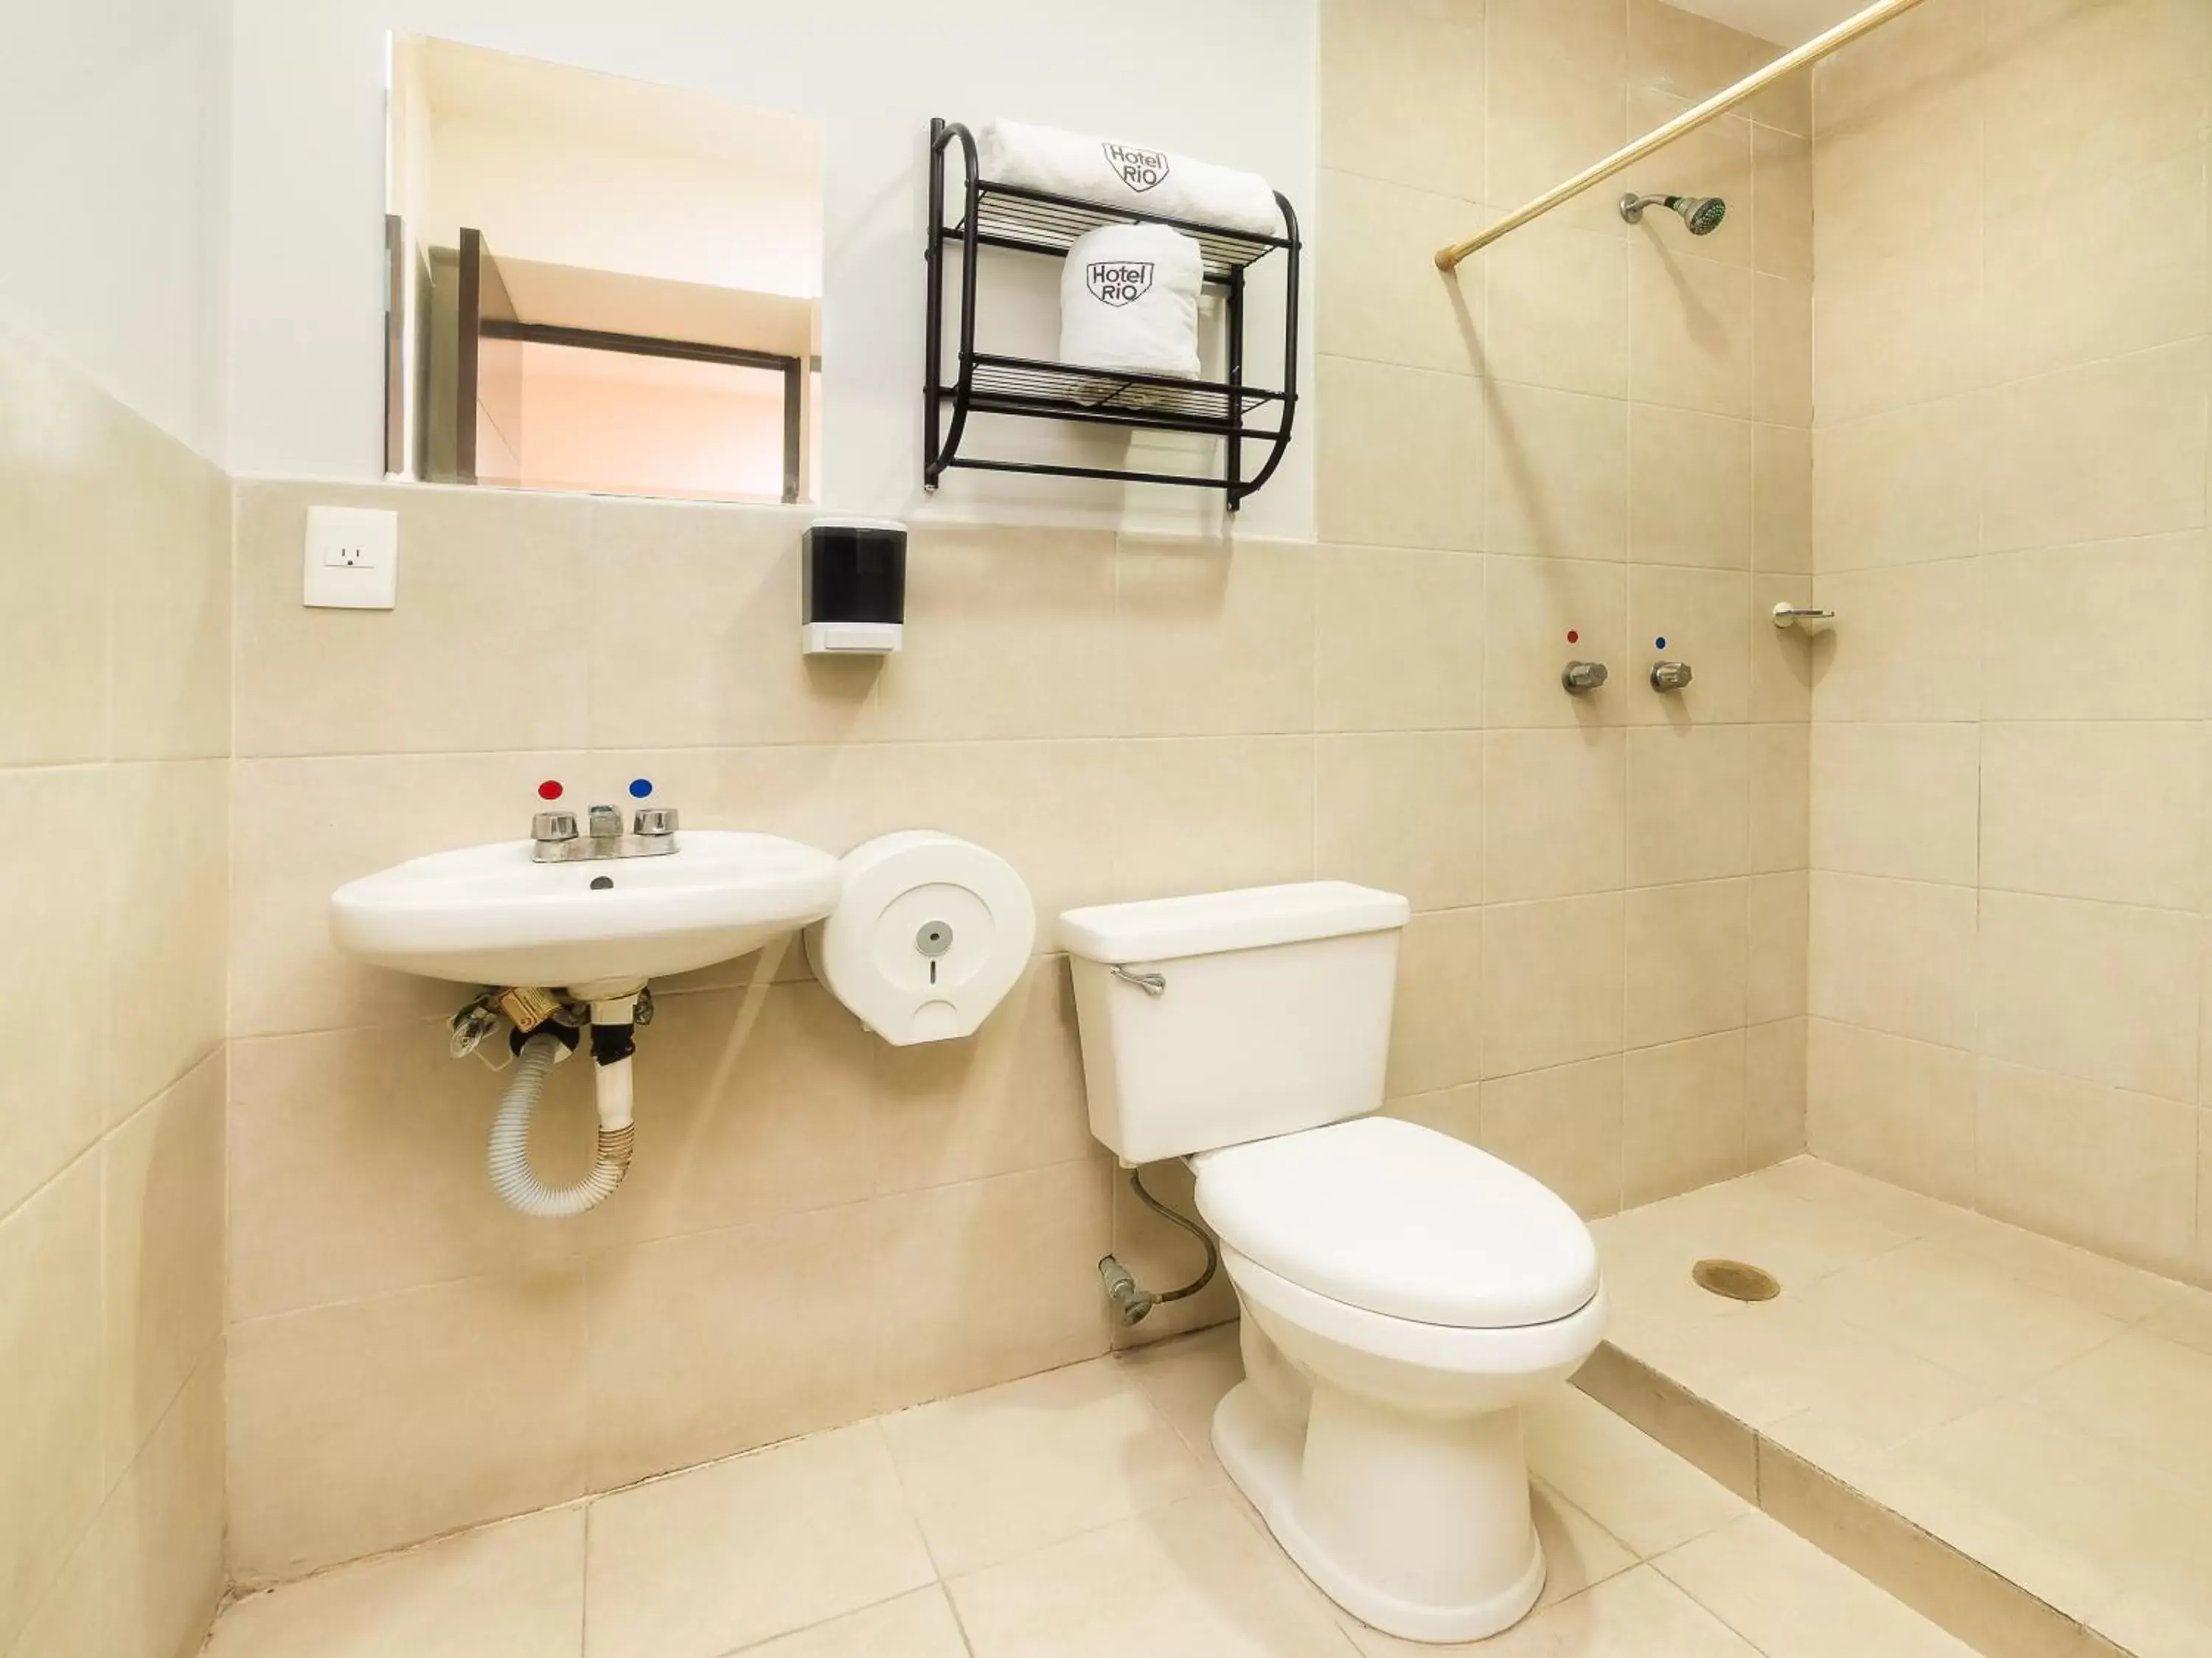 Toilet, Bathroom in Hotel Río